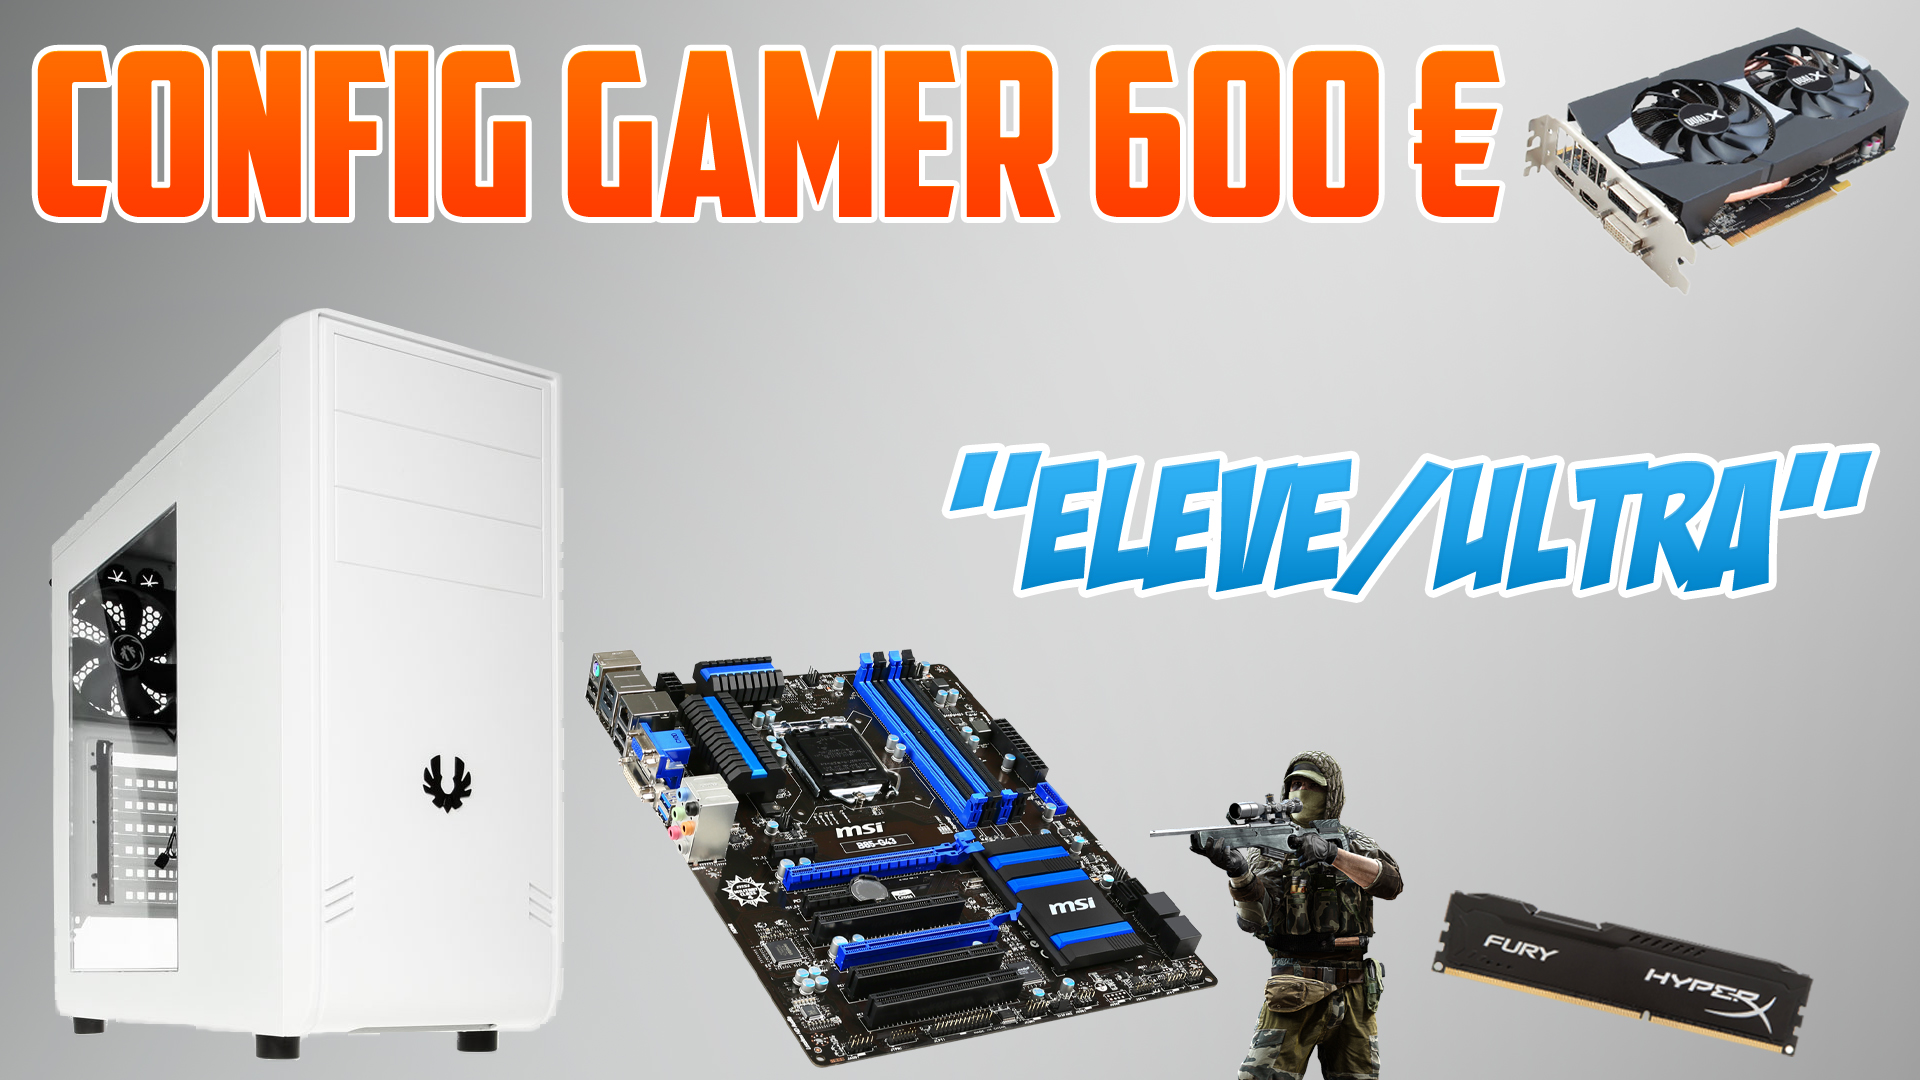 Config Gamer 600€